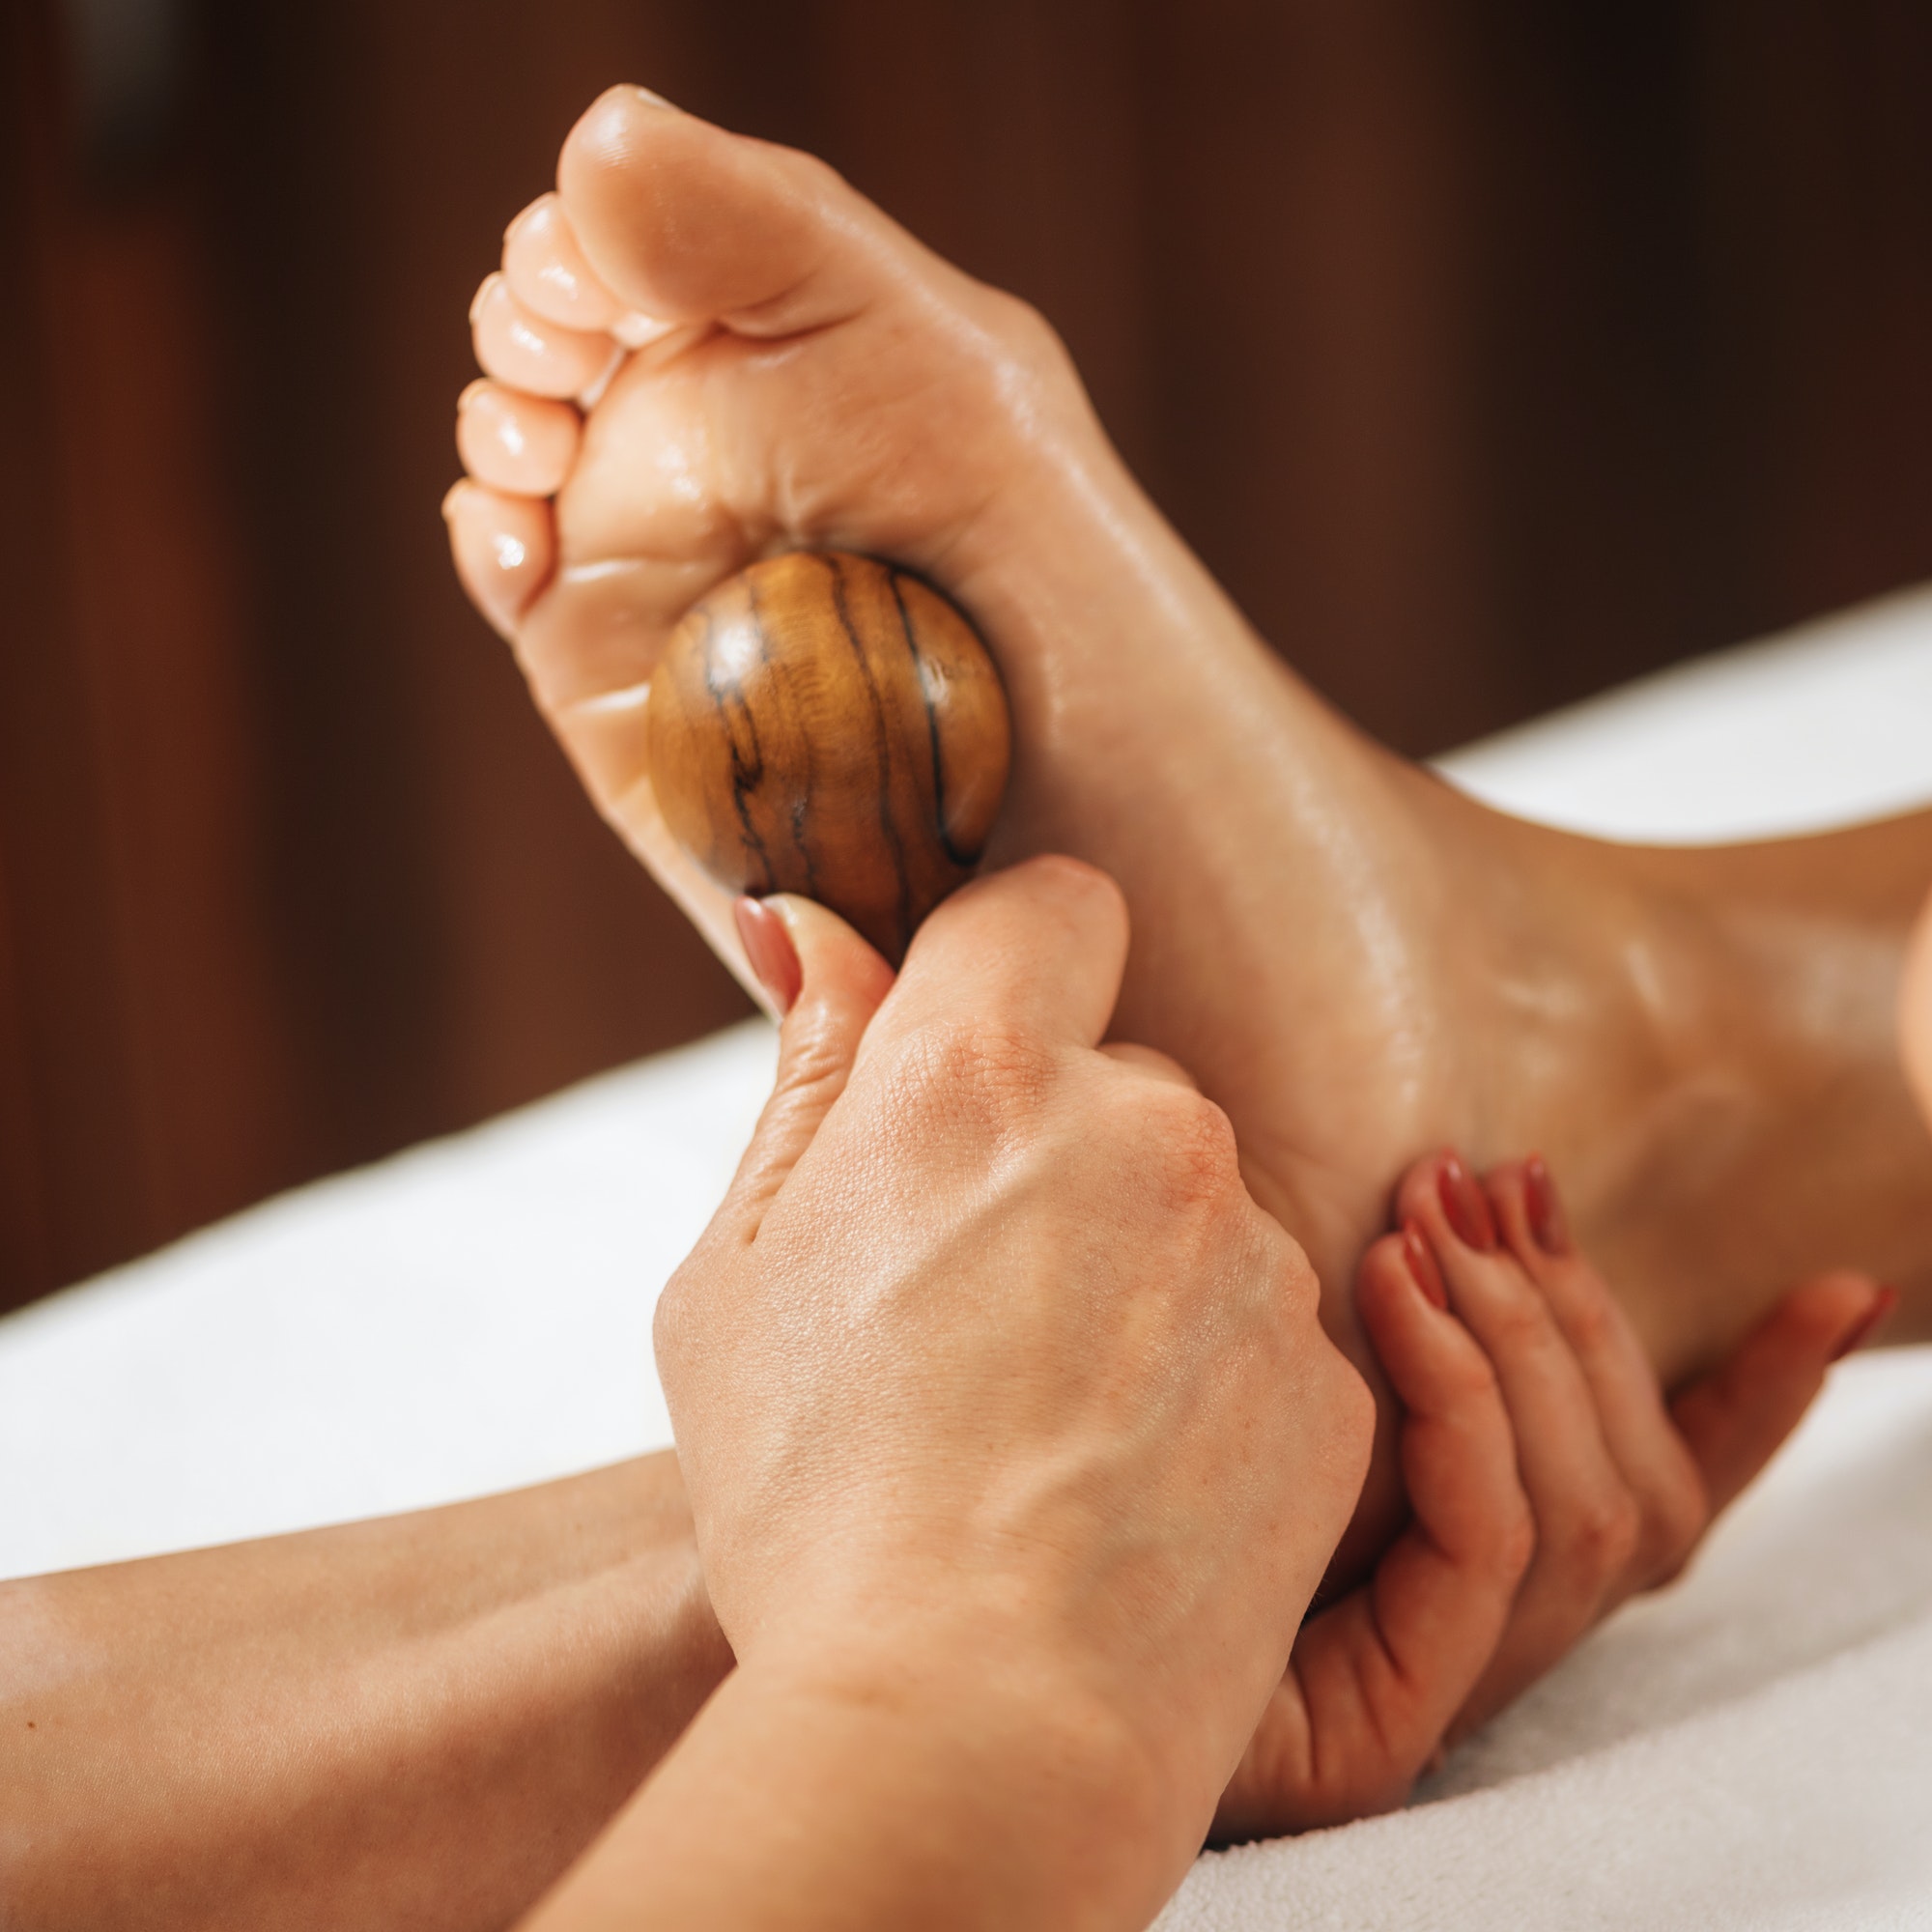 Reflexology - Foot Massage with Wooden Massage Tool.